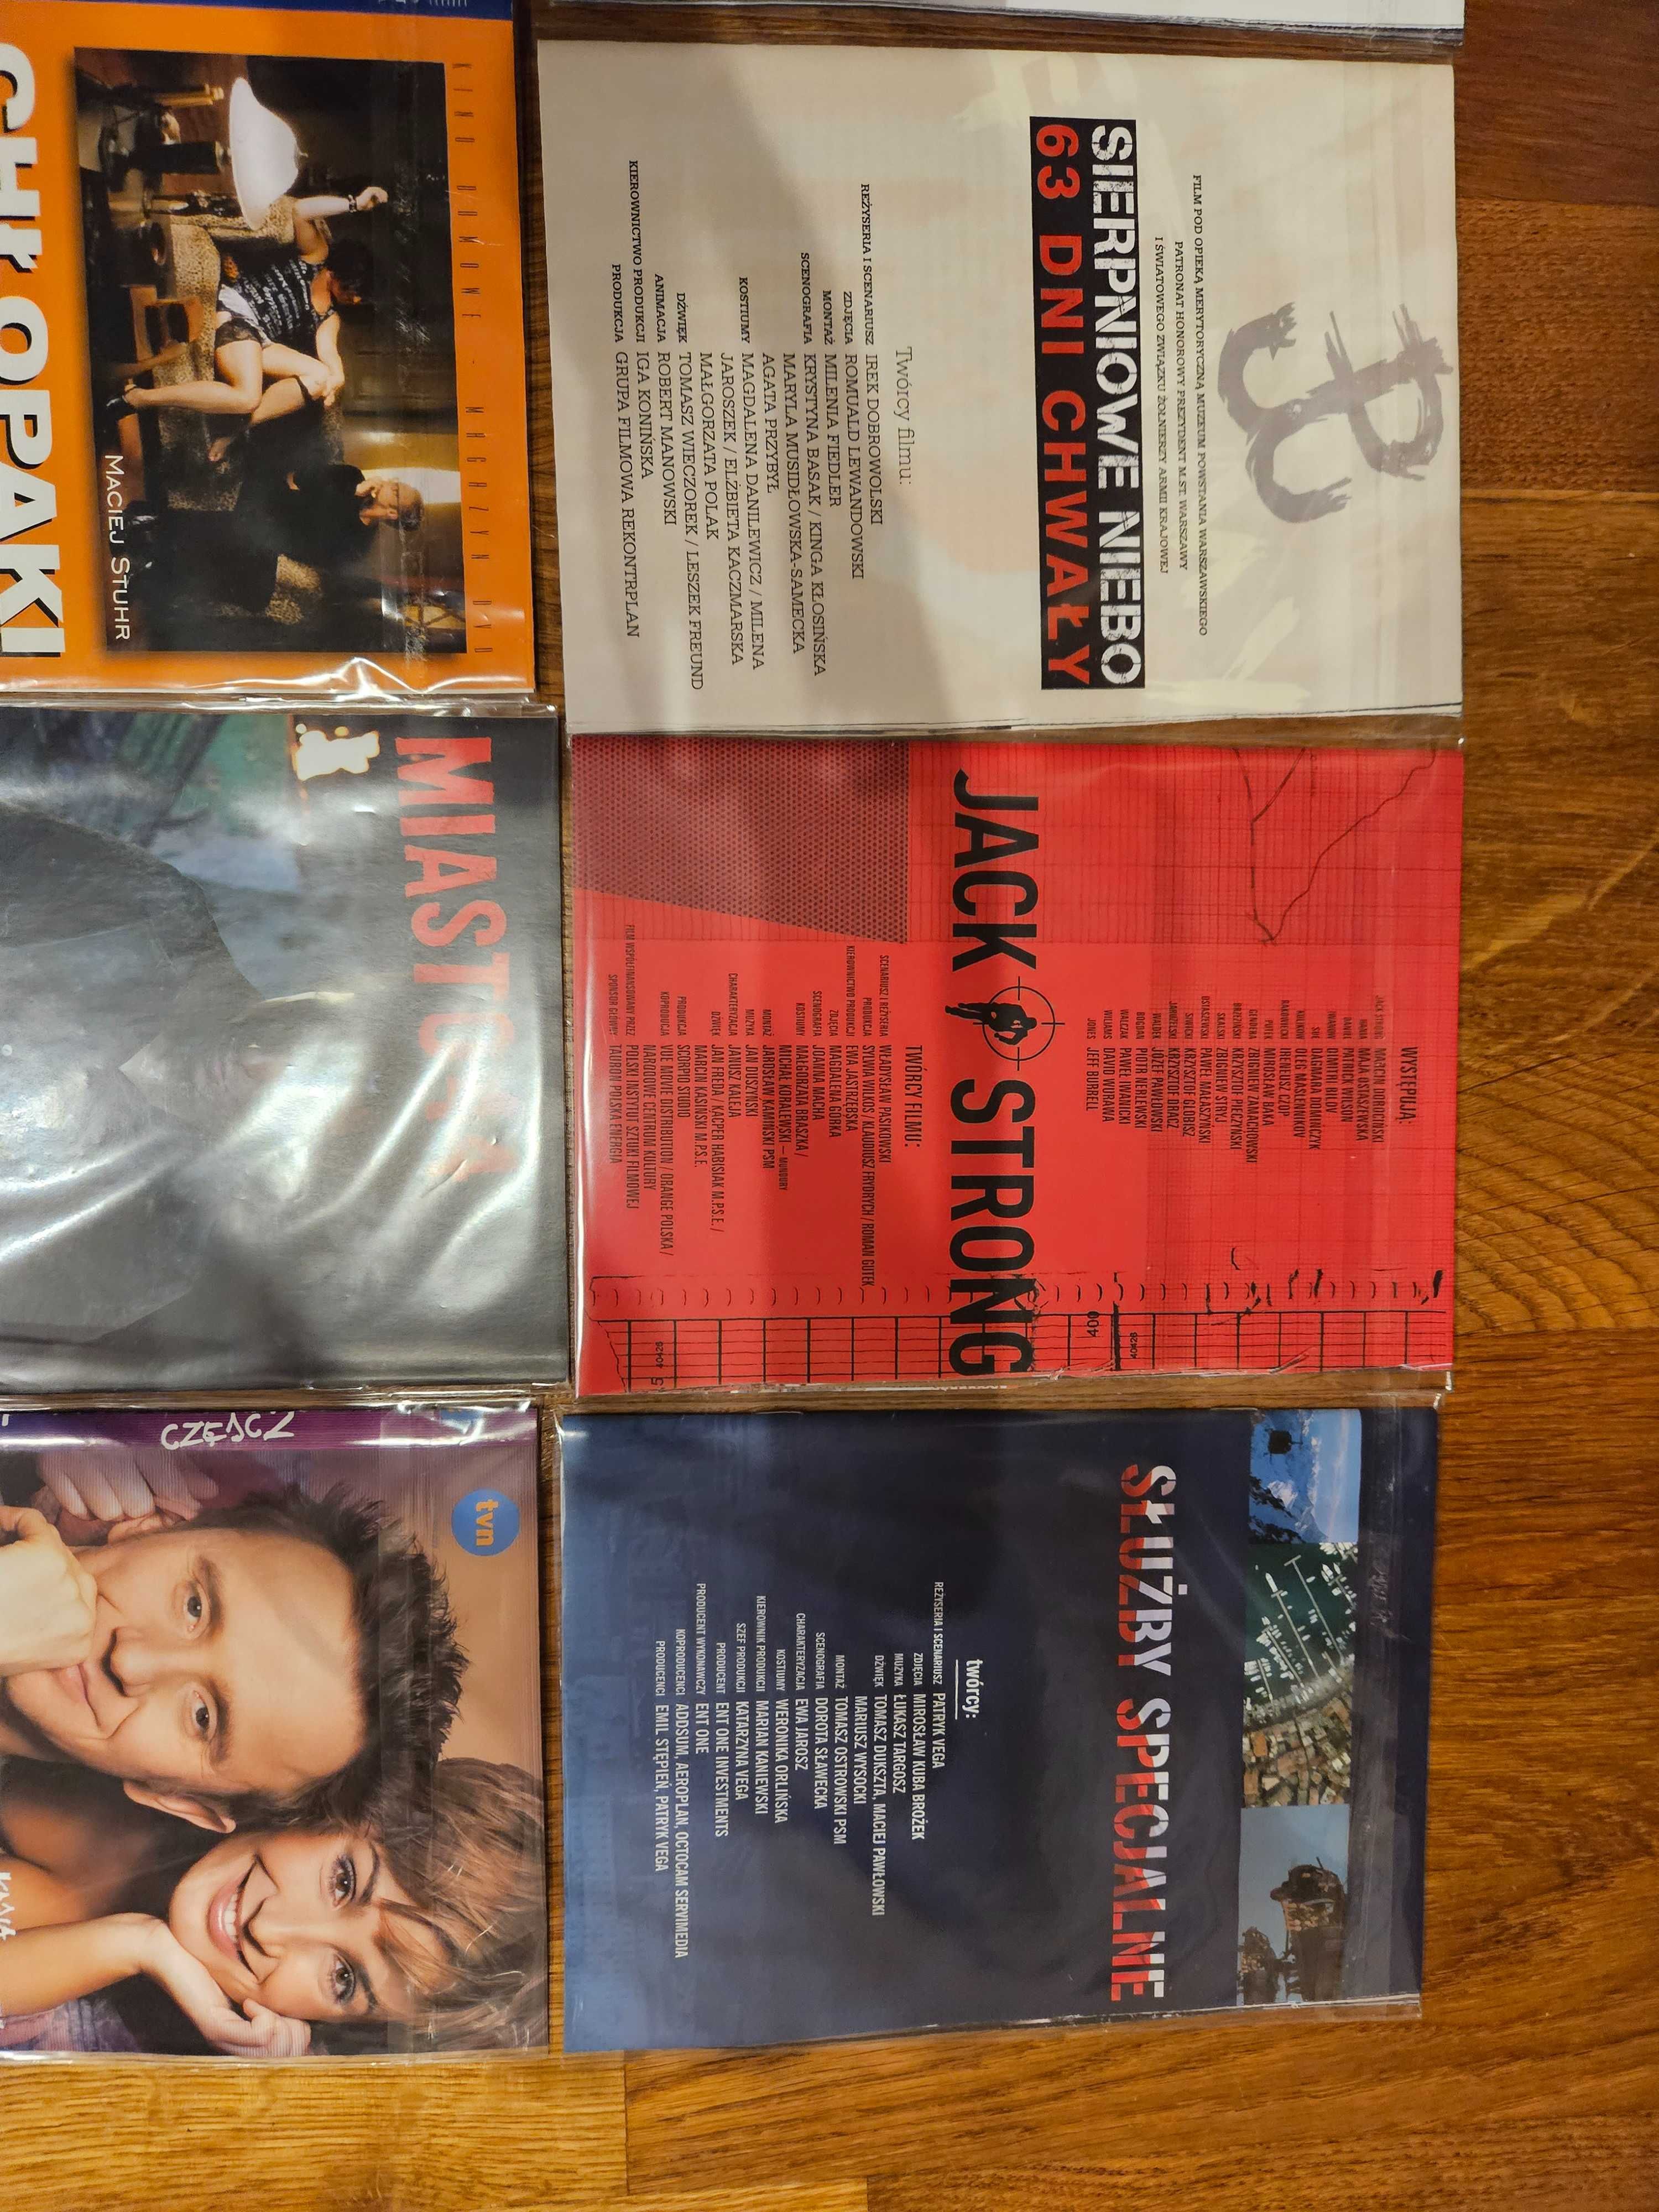 Filmy DVD zestaw 10 tytułów szczegóły w opisie